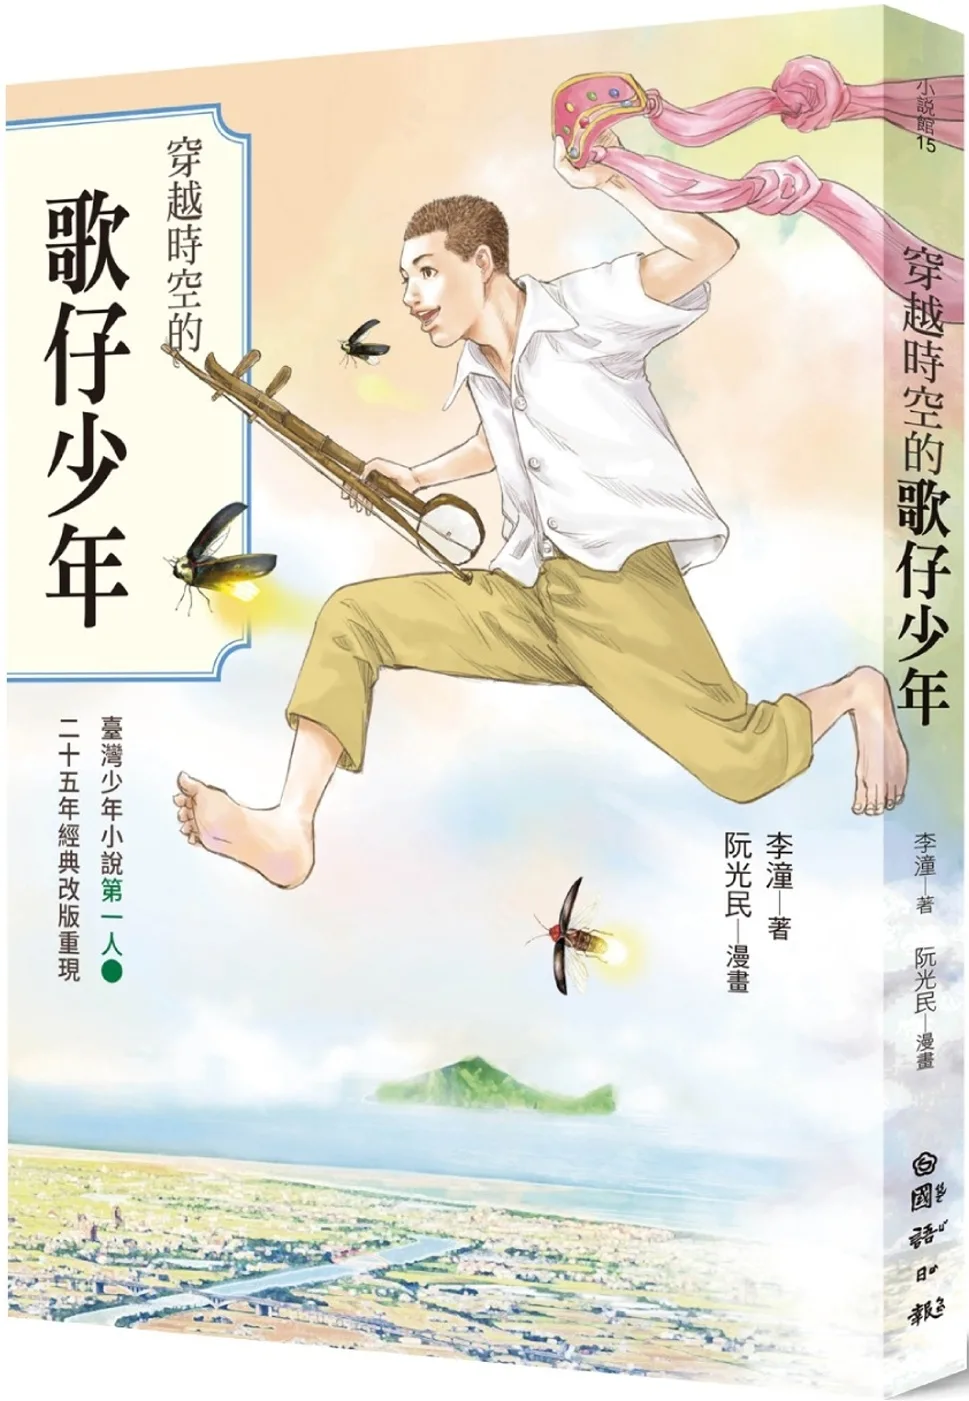 穿越時空的歌仔少年：臺灣少年小說第一人